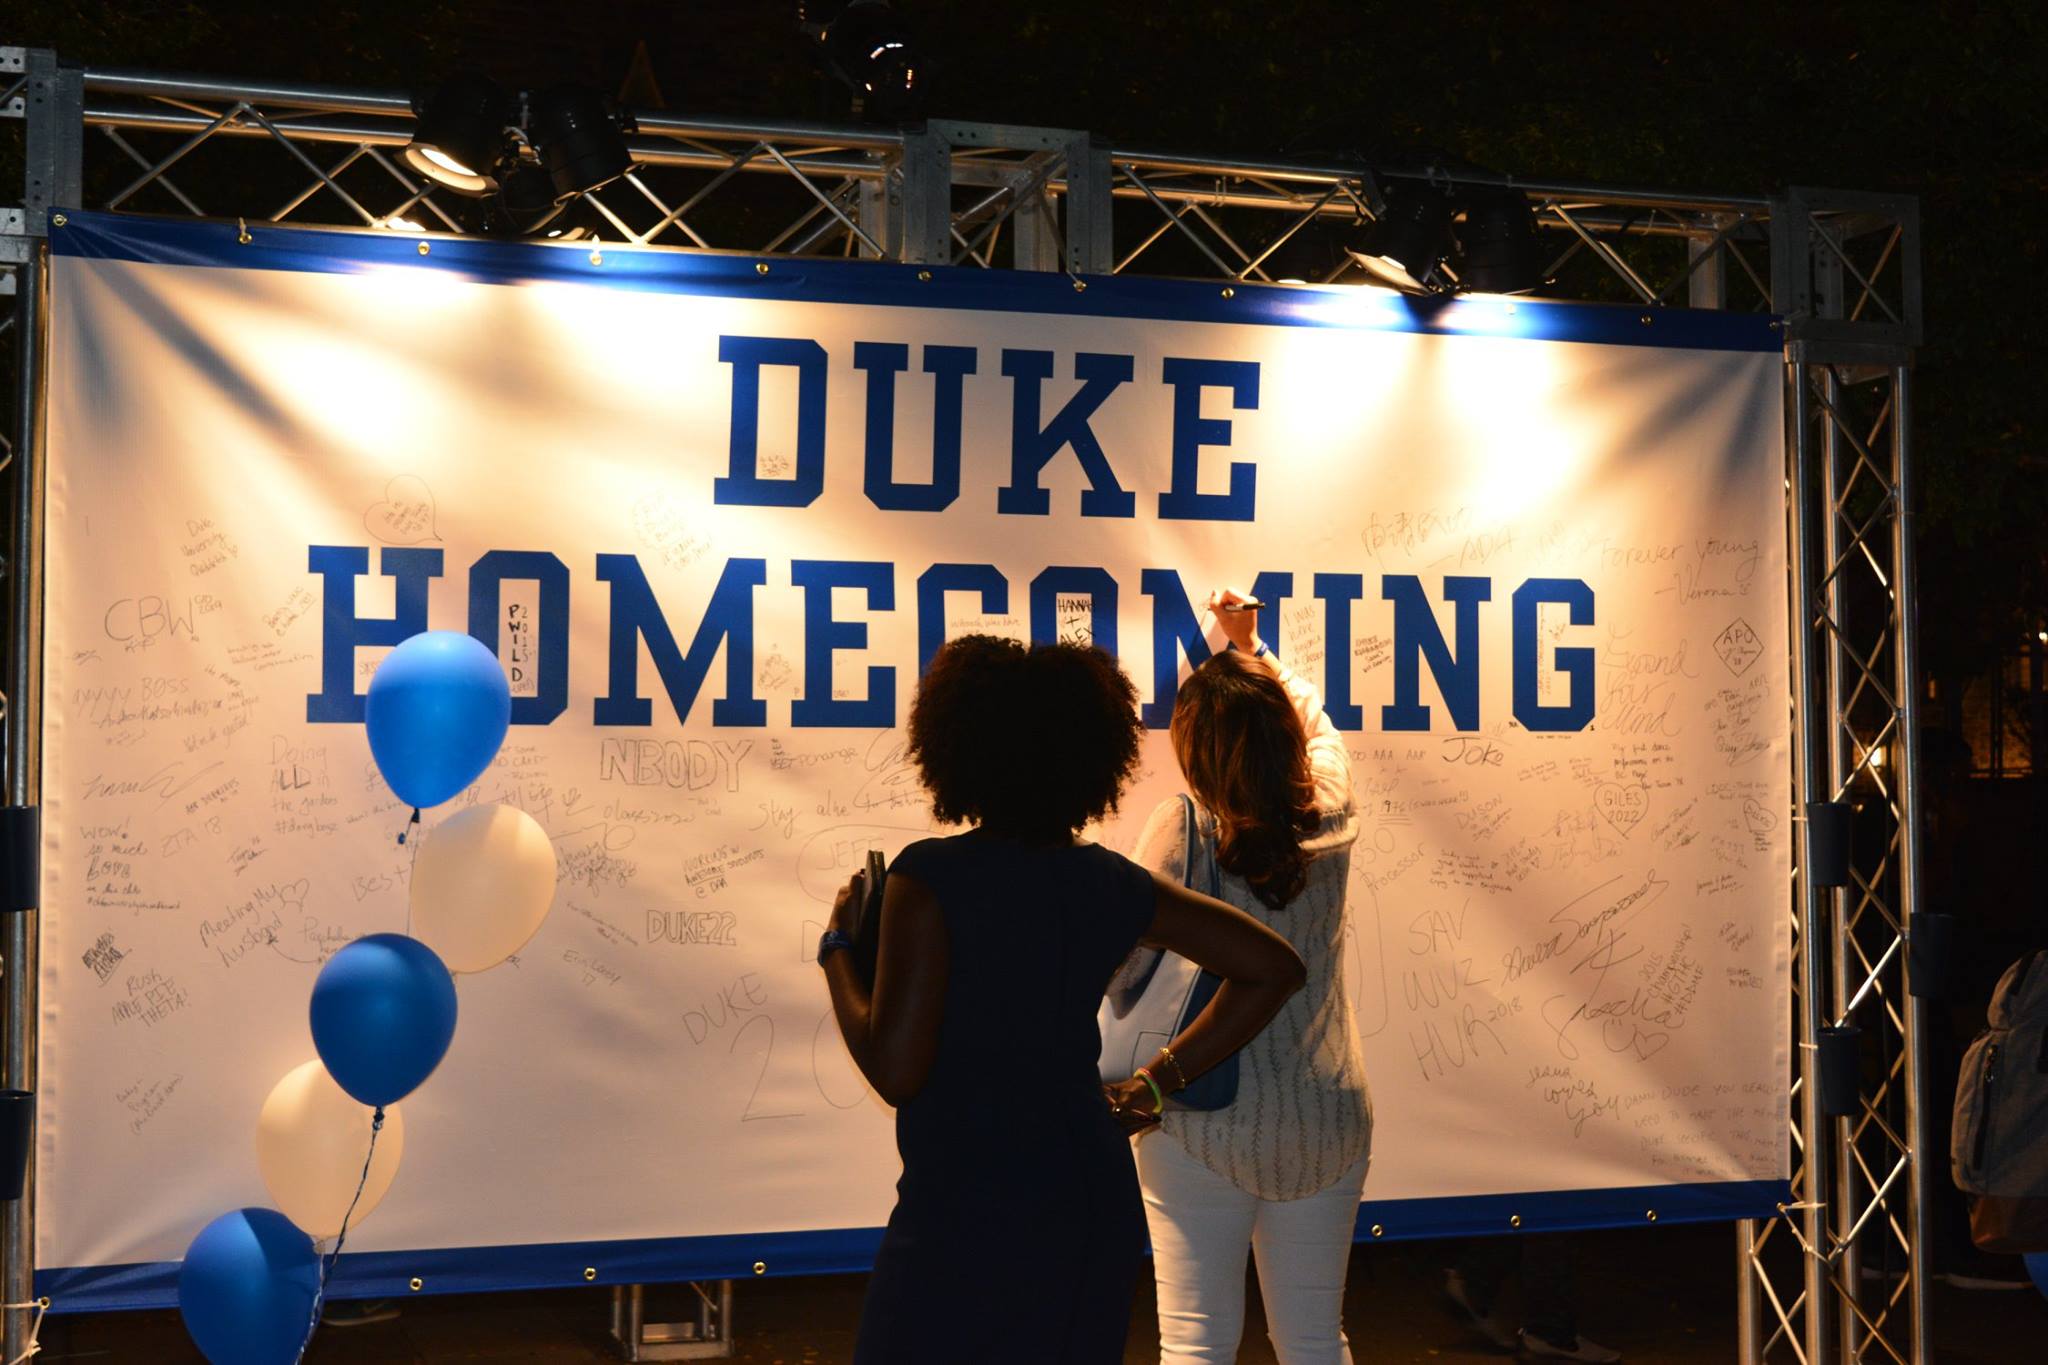 Duke homecoming banner